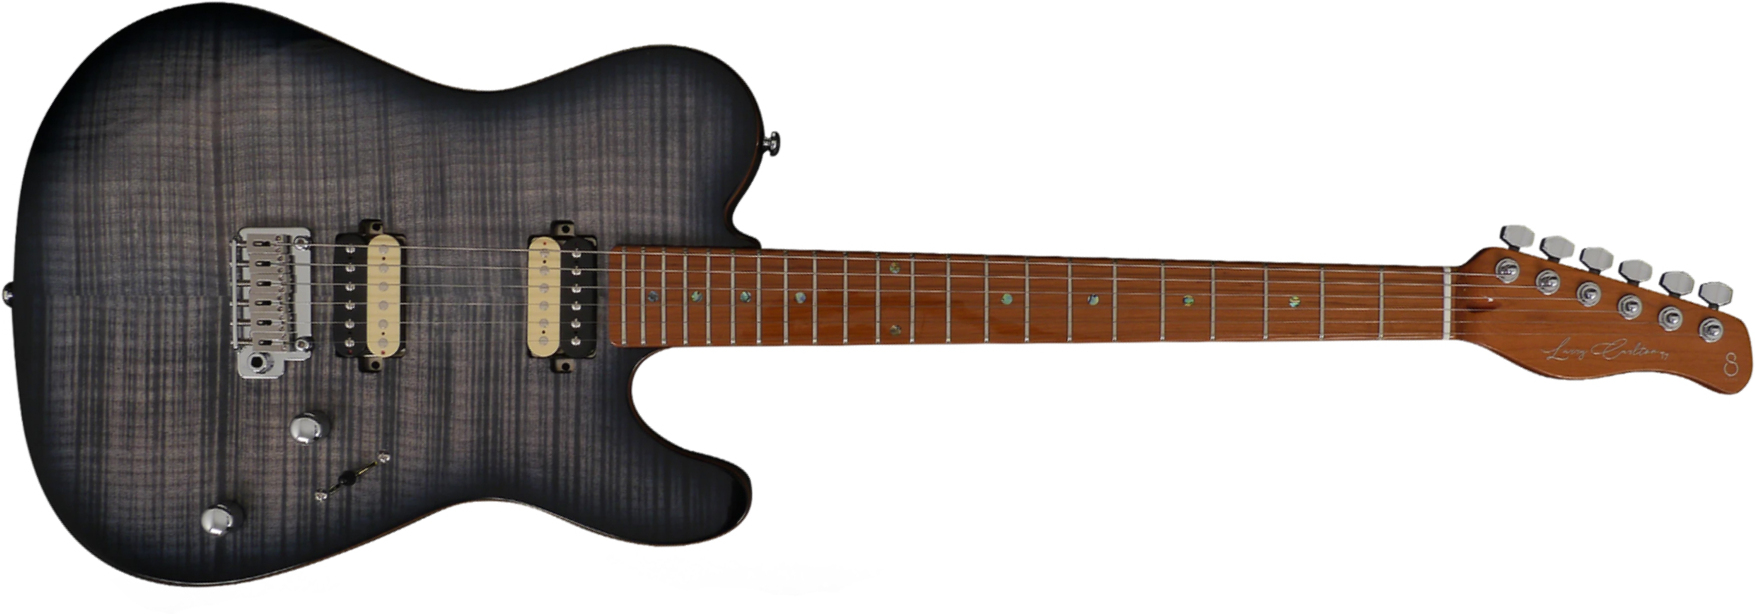 Sire Larry Carlton T7 Fm Hh Trem Mn - Trans Black - Guitarra eléctrica con forma de tel - Main picture